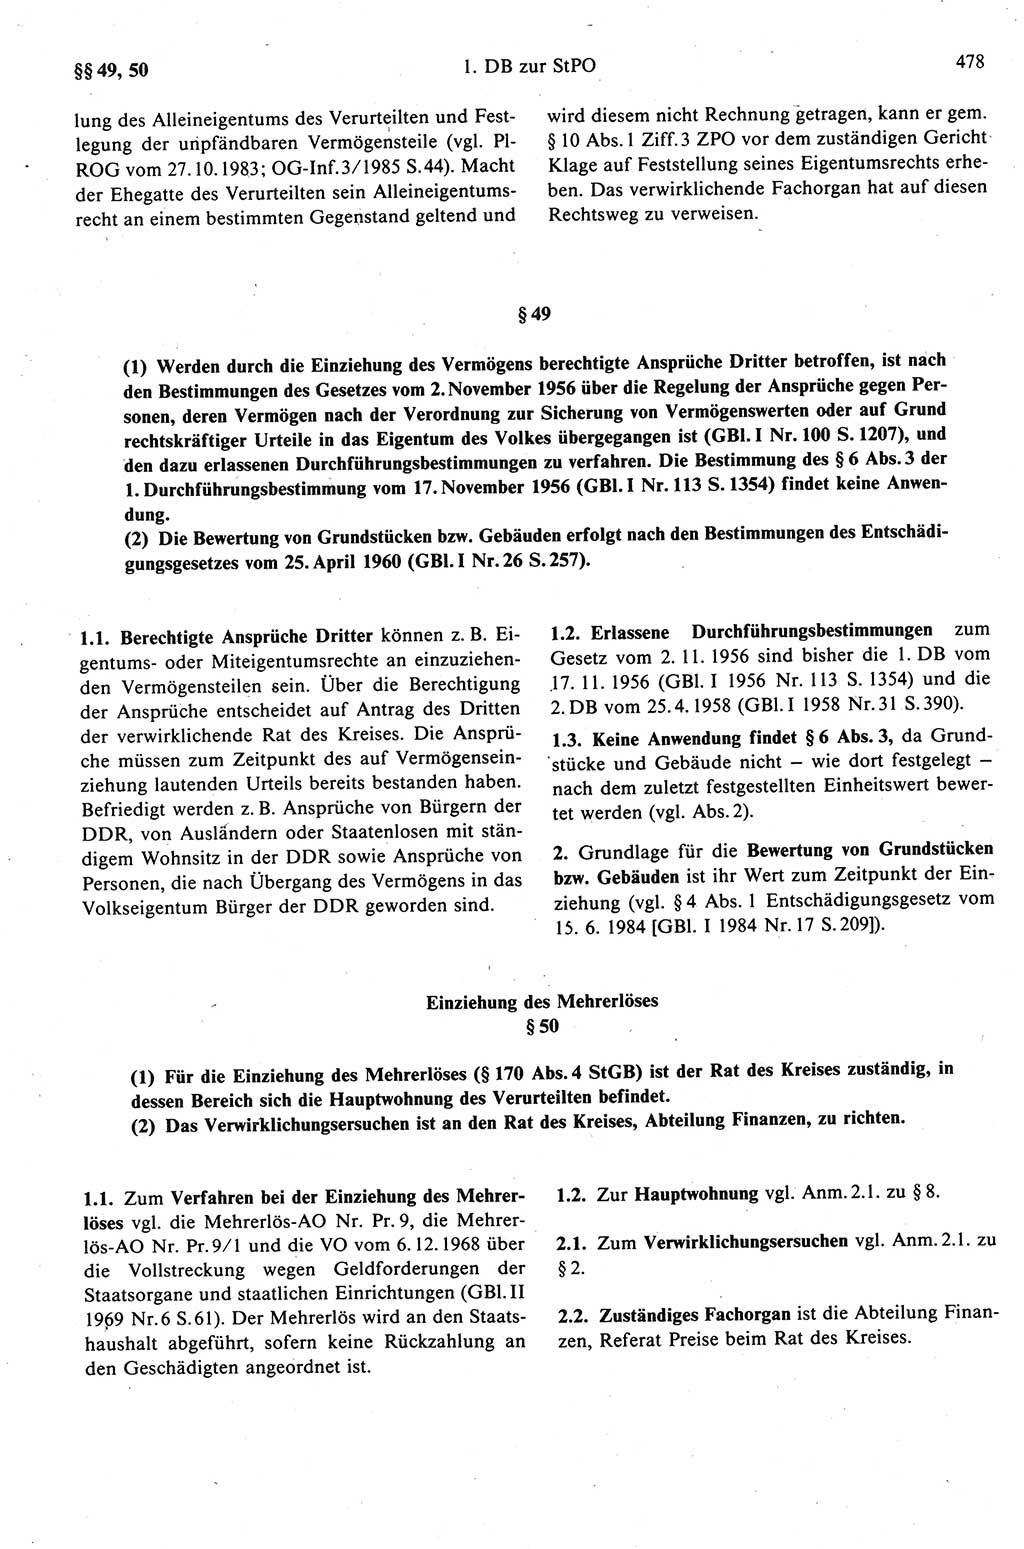 Strafprozeßrecht der DDR (Deutsche Demokratische Republik), Kommentar zur Strafprozeßordnung (StPO) 1989, Seite 478 (Strafprozeßr. DDR Komm. StPO 1989, S. 478)